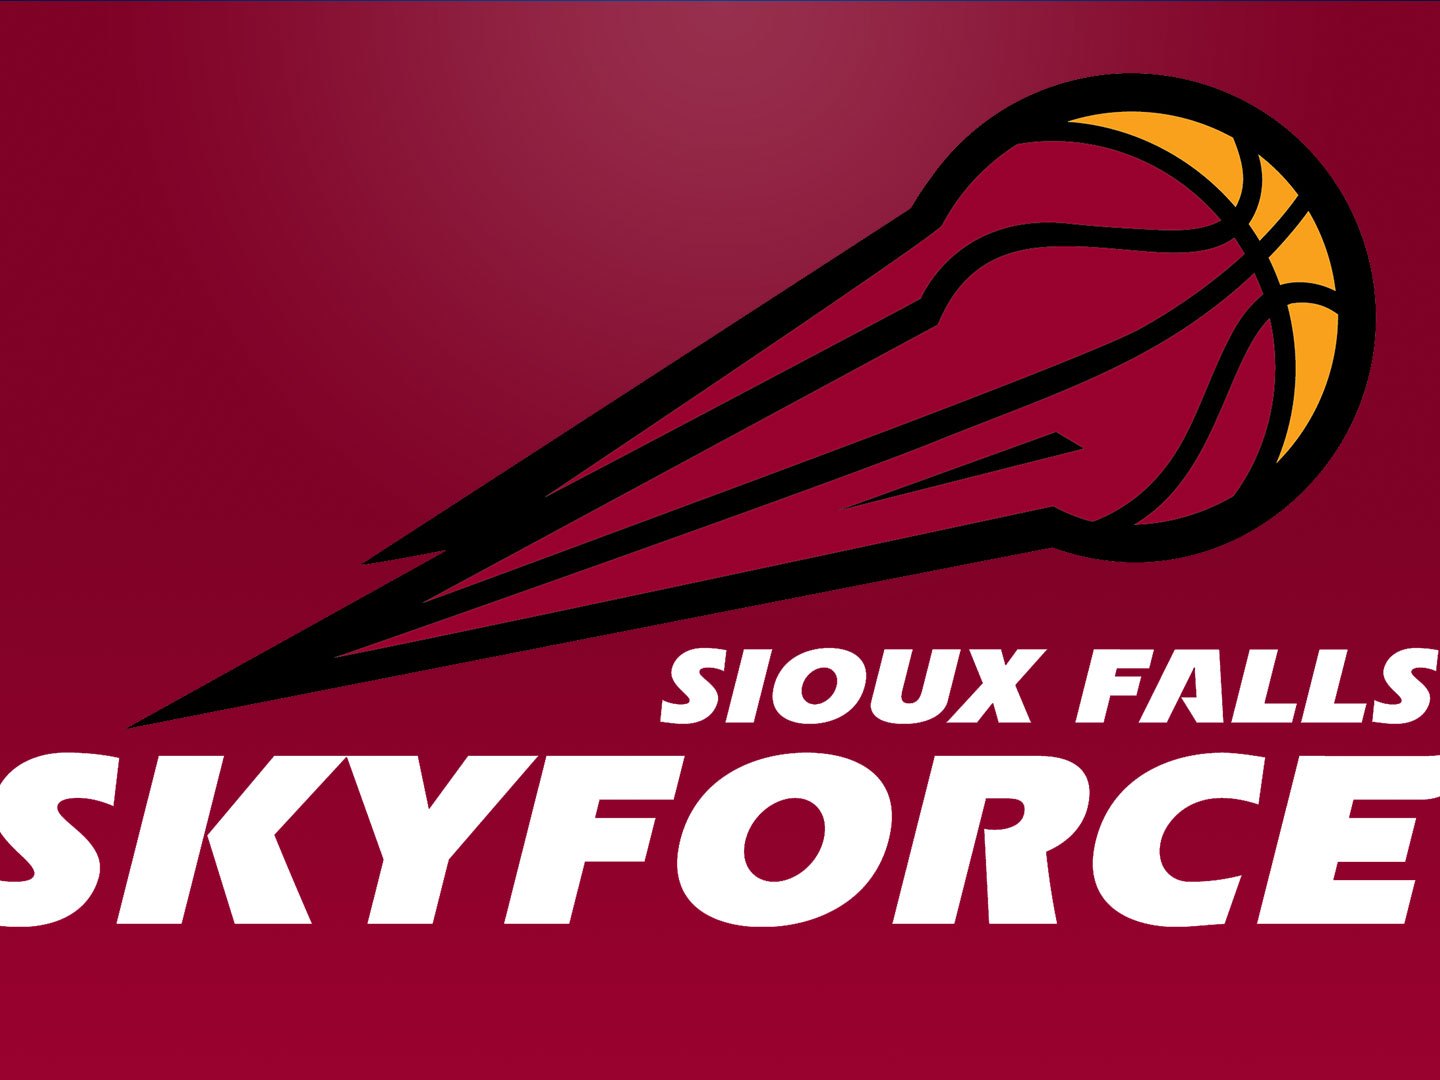 KELO-SiouxFalls-Skyforce_1529375950230.jpg